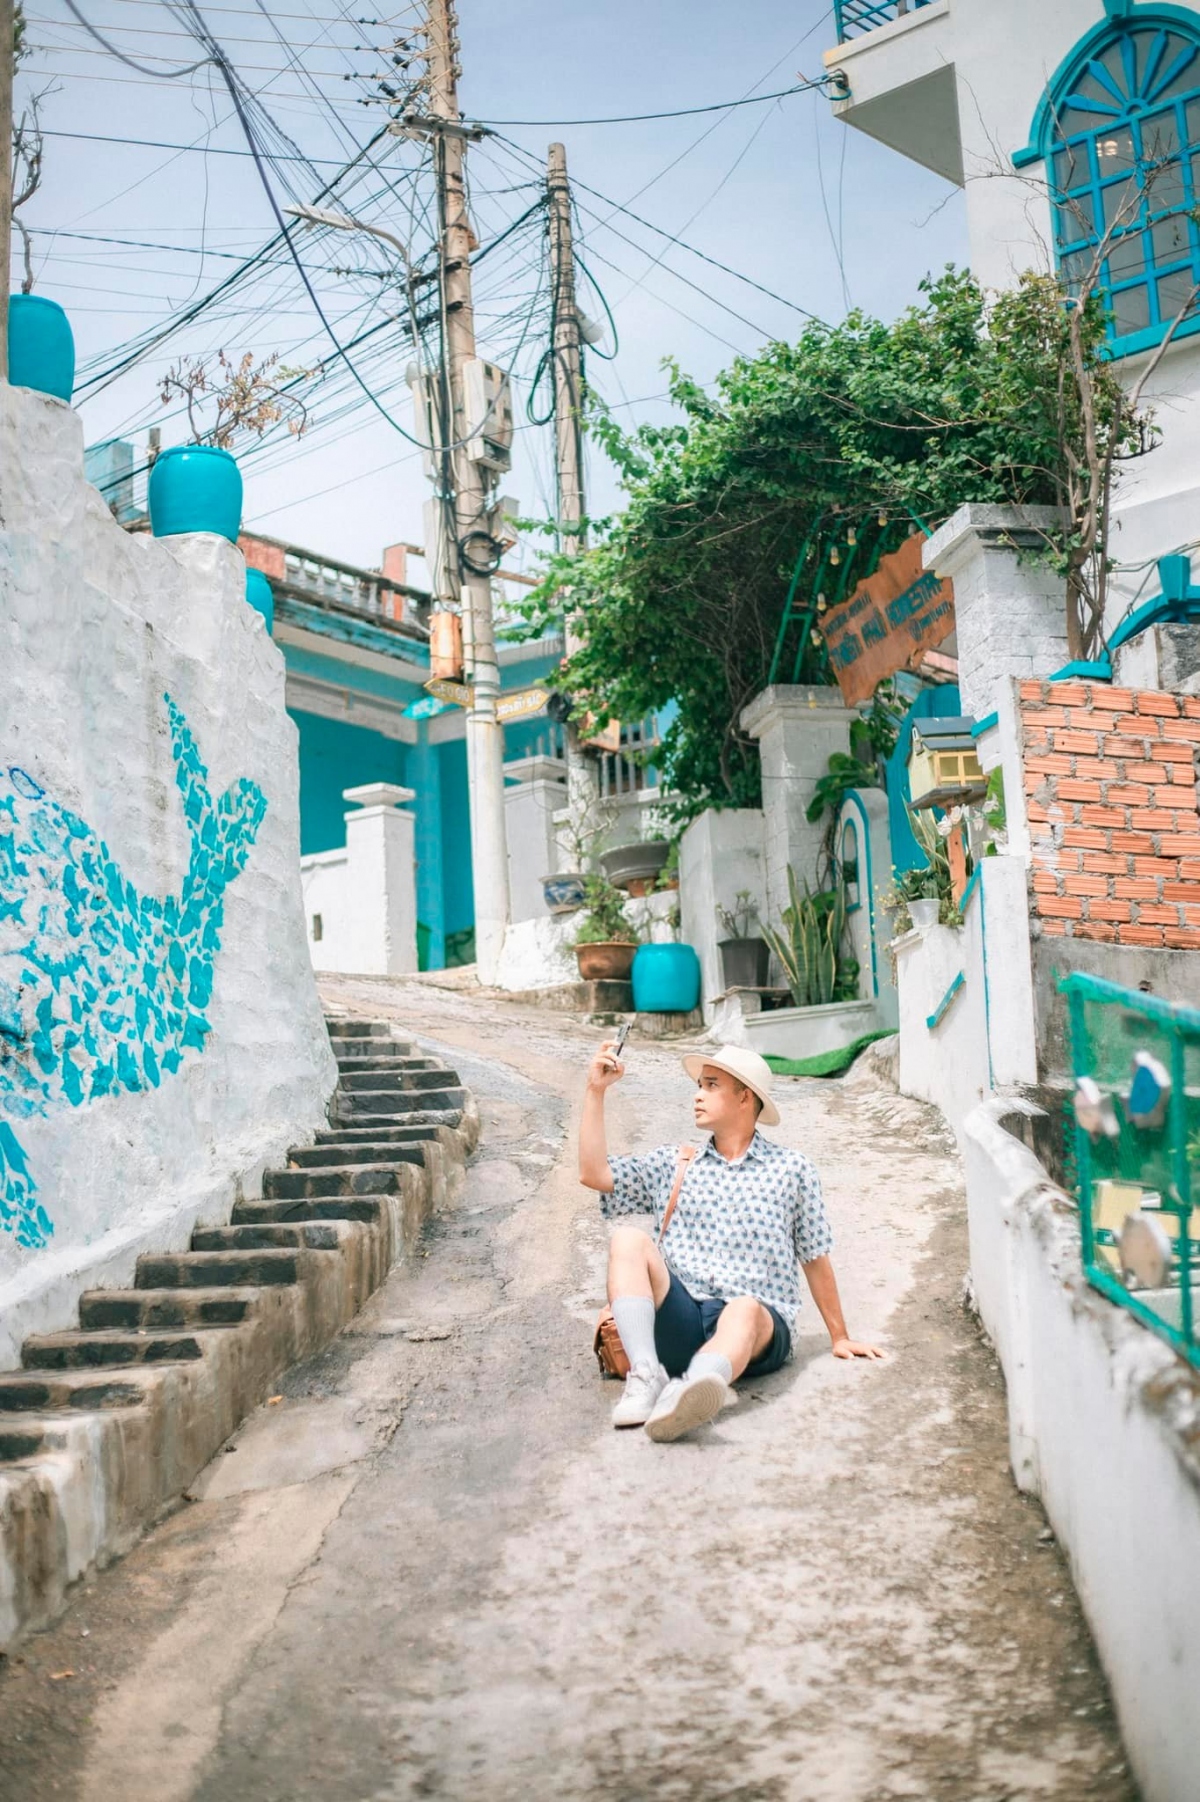 Blogger Bùi Ngọc Công (Rọt) cho biết bản thân vừa có chuyến du lịch Quy Nhơn hồi tháng 5 vừa qua và rất ngỡ ngàng trước vẻ đẹp bình dị của làng chài Nhơn Lý.